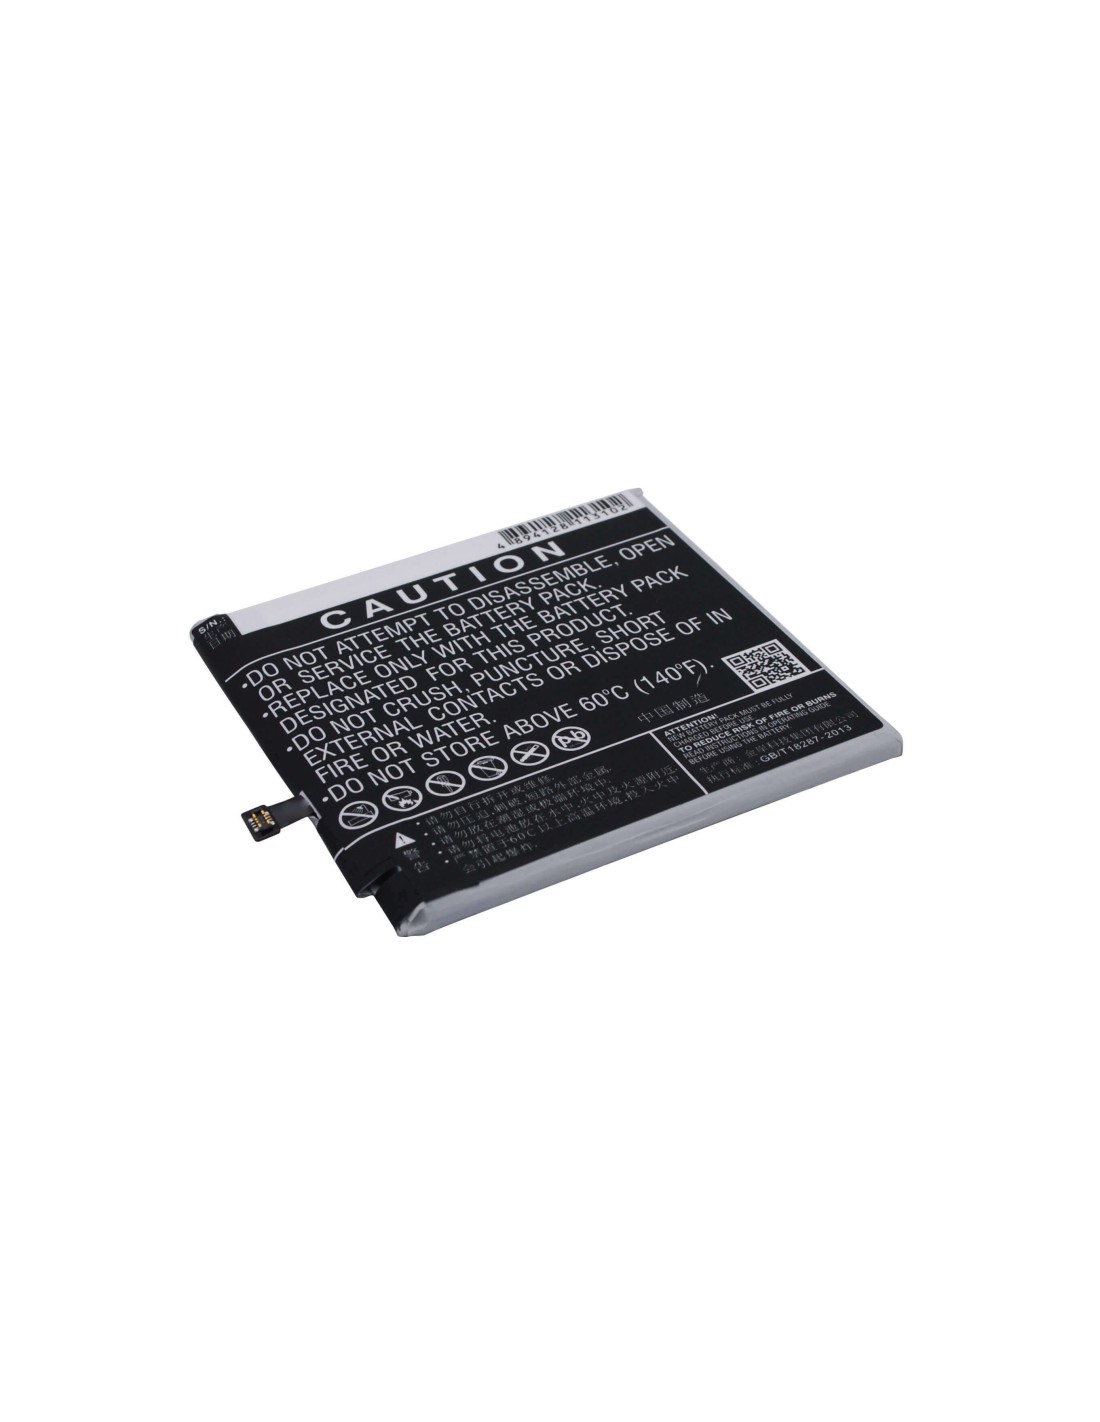 Battery for MeiZu MX5 Pro, NIUX, M576 3.8V, 3000mAh - 11.40Wh